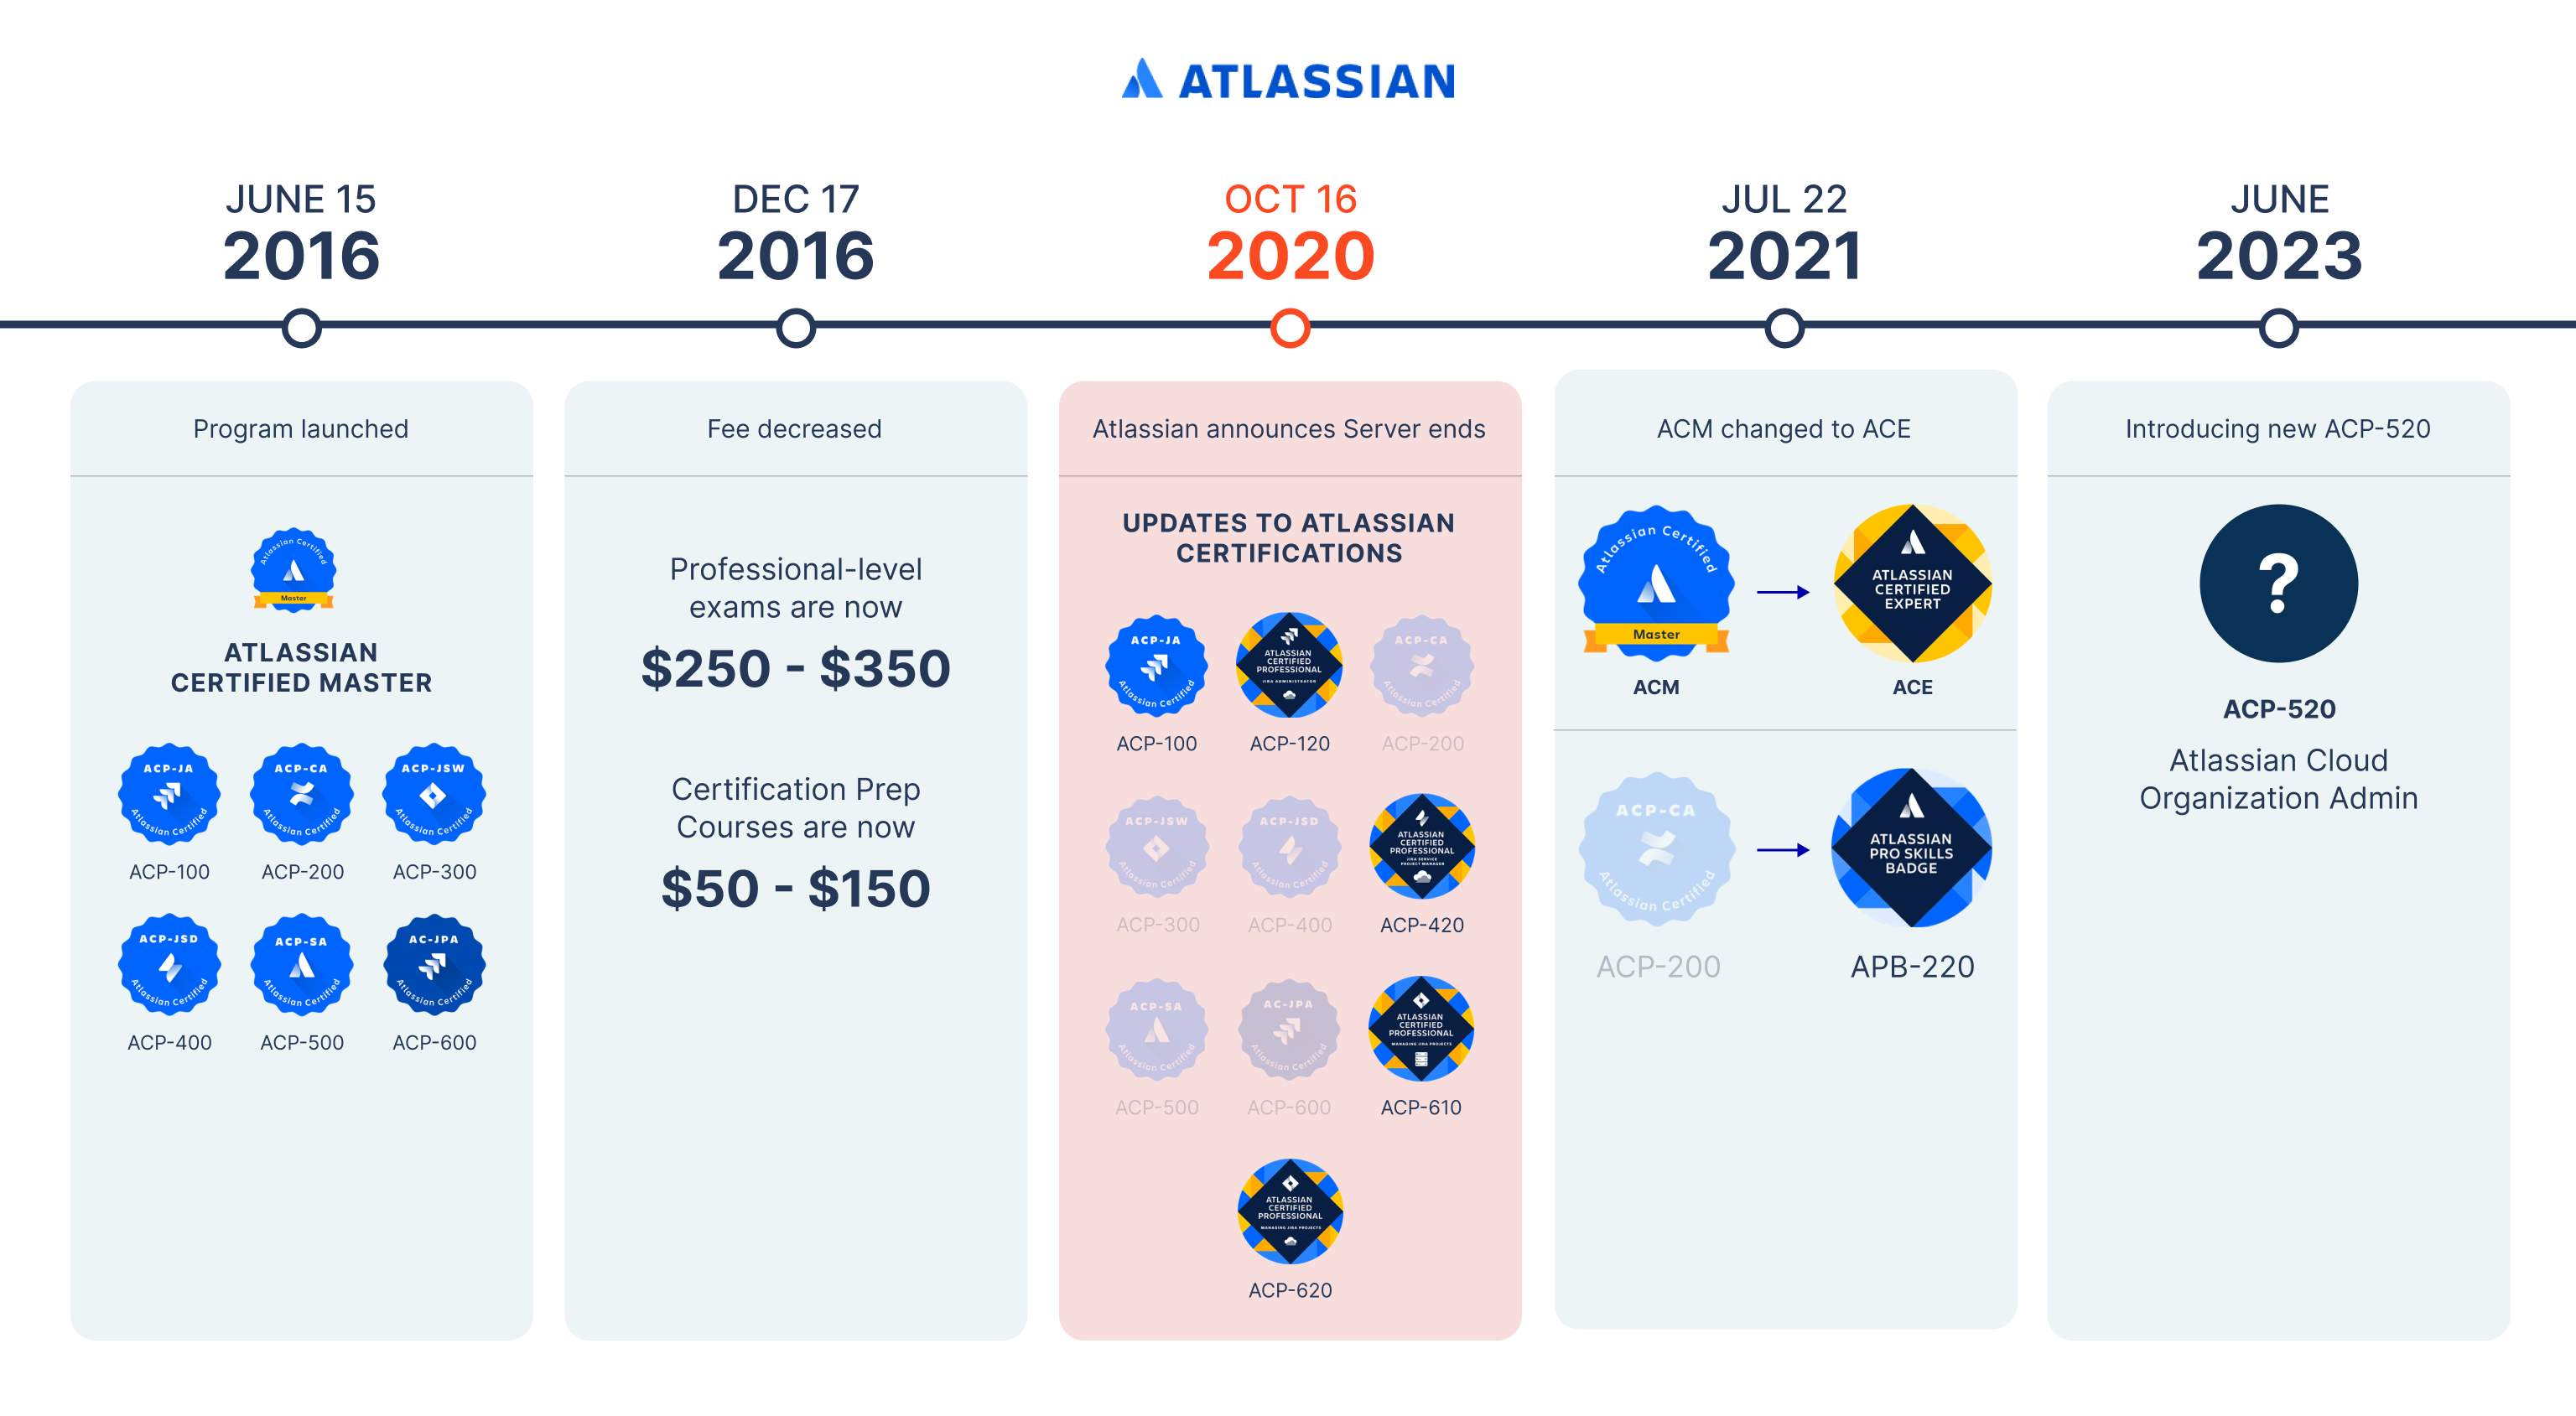 AgileOps - Lịch sử phát triển của Atlassian